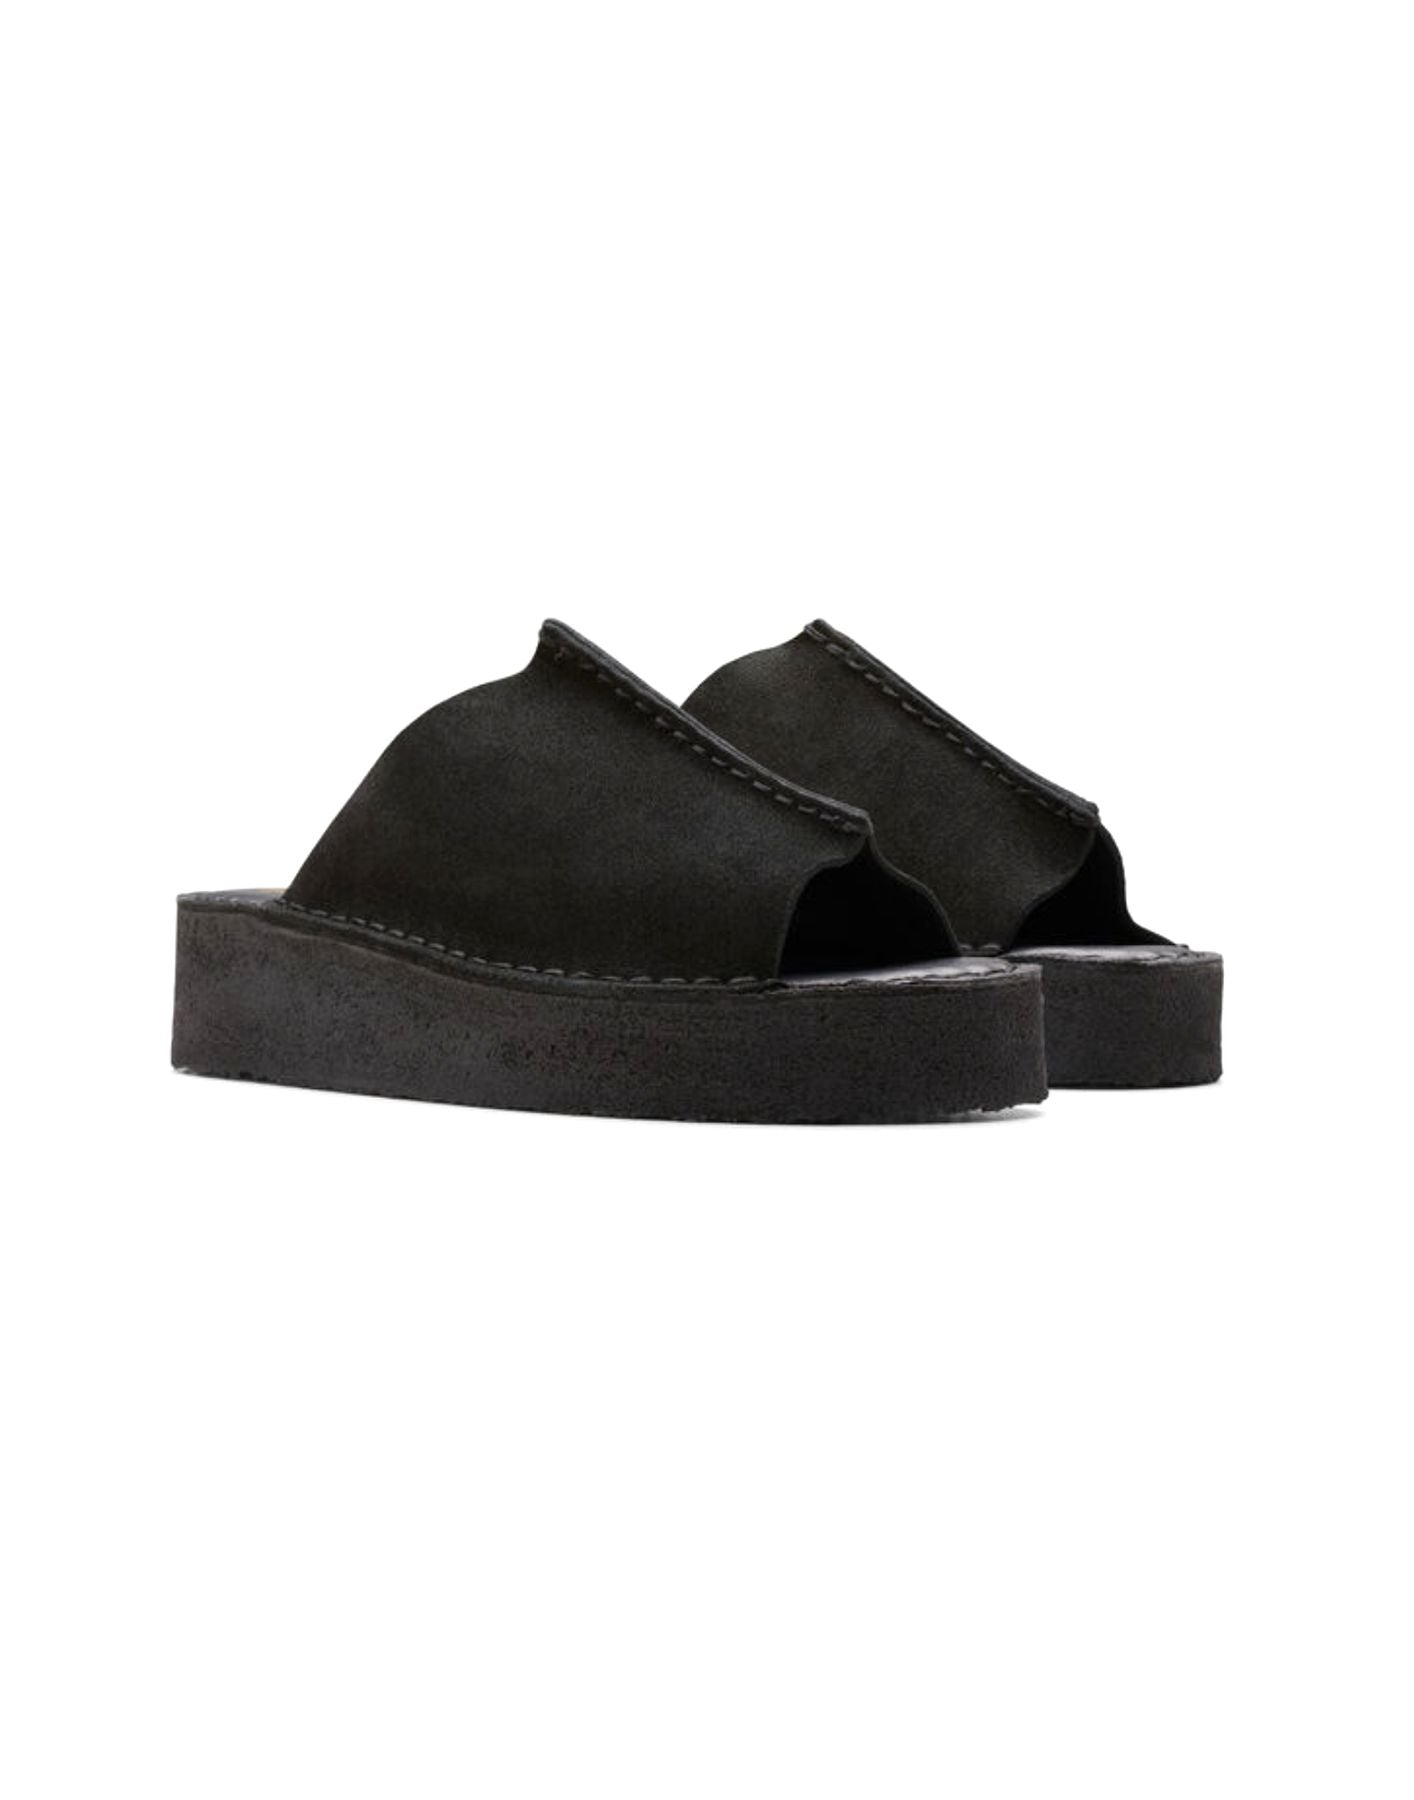 Sandal for woman WEDGE SLIDE BLACK Clarks Originals